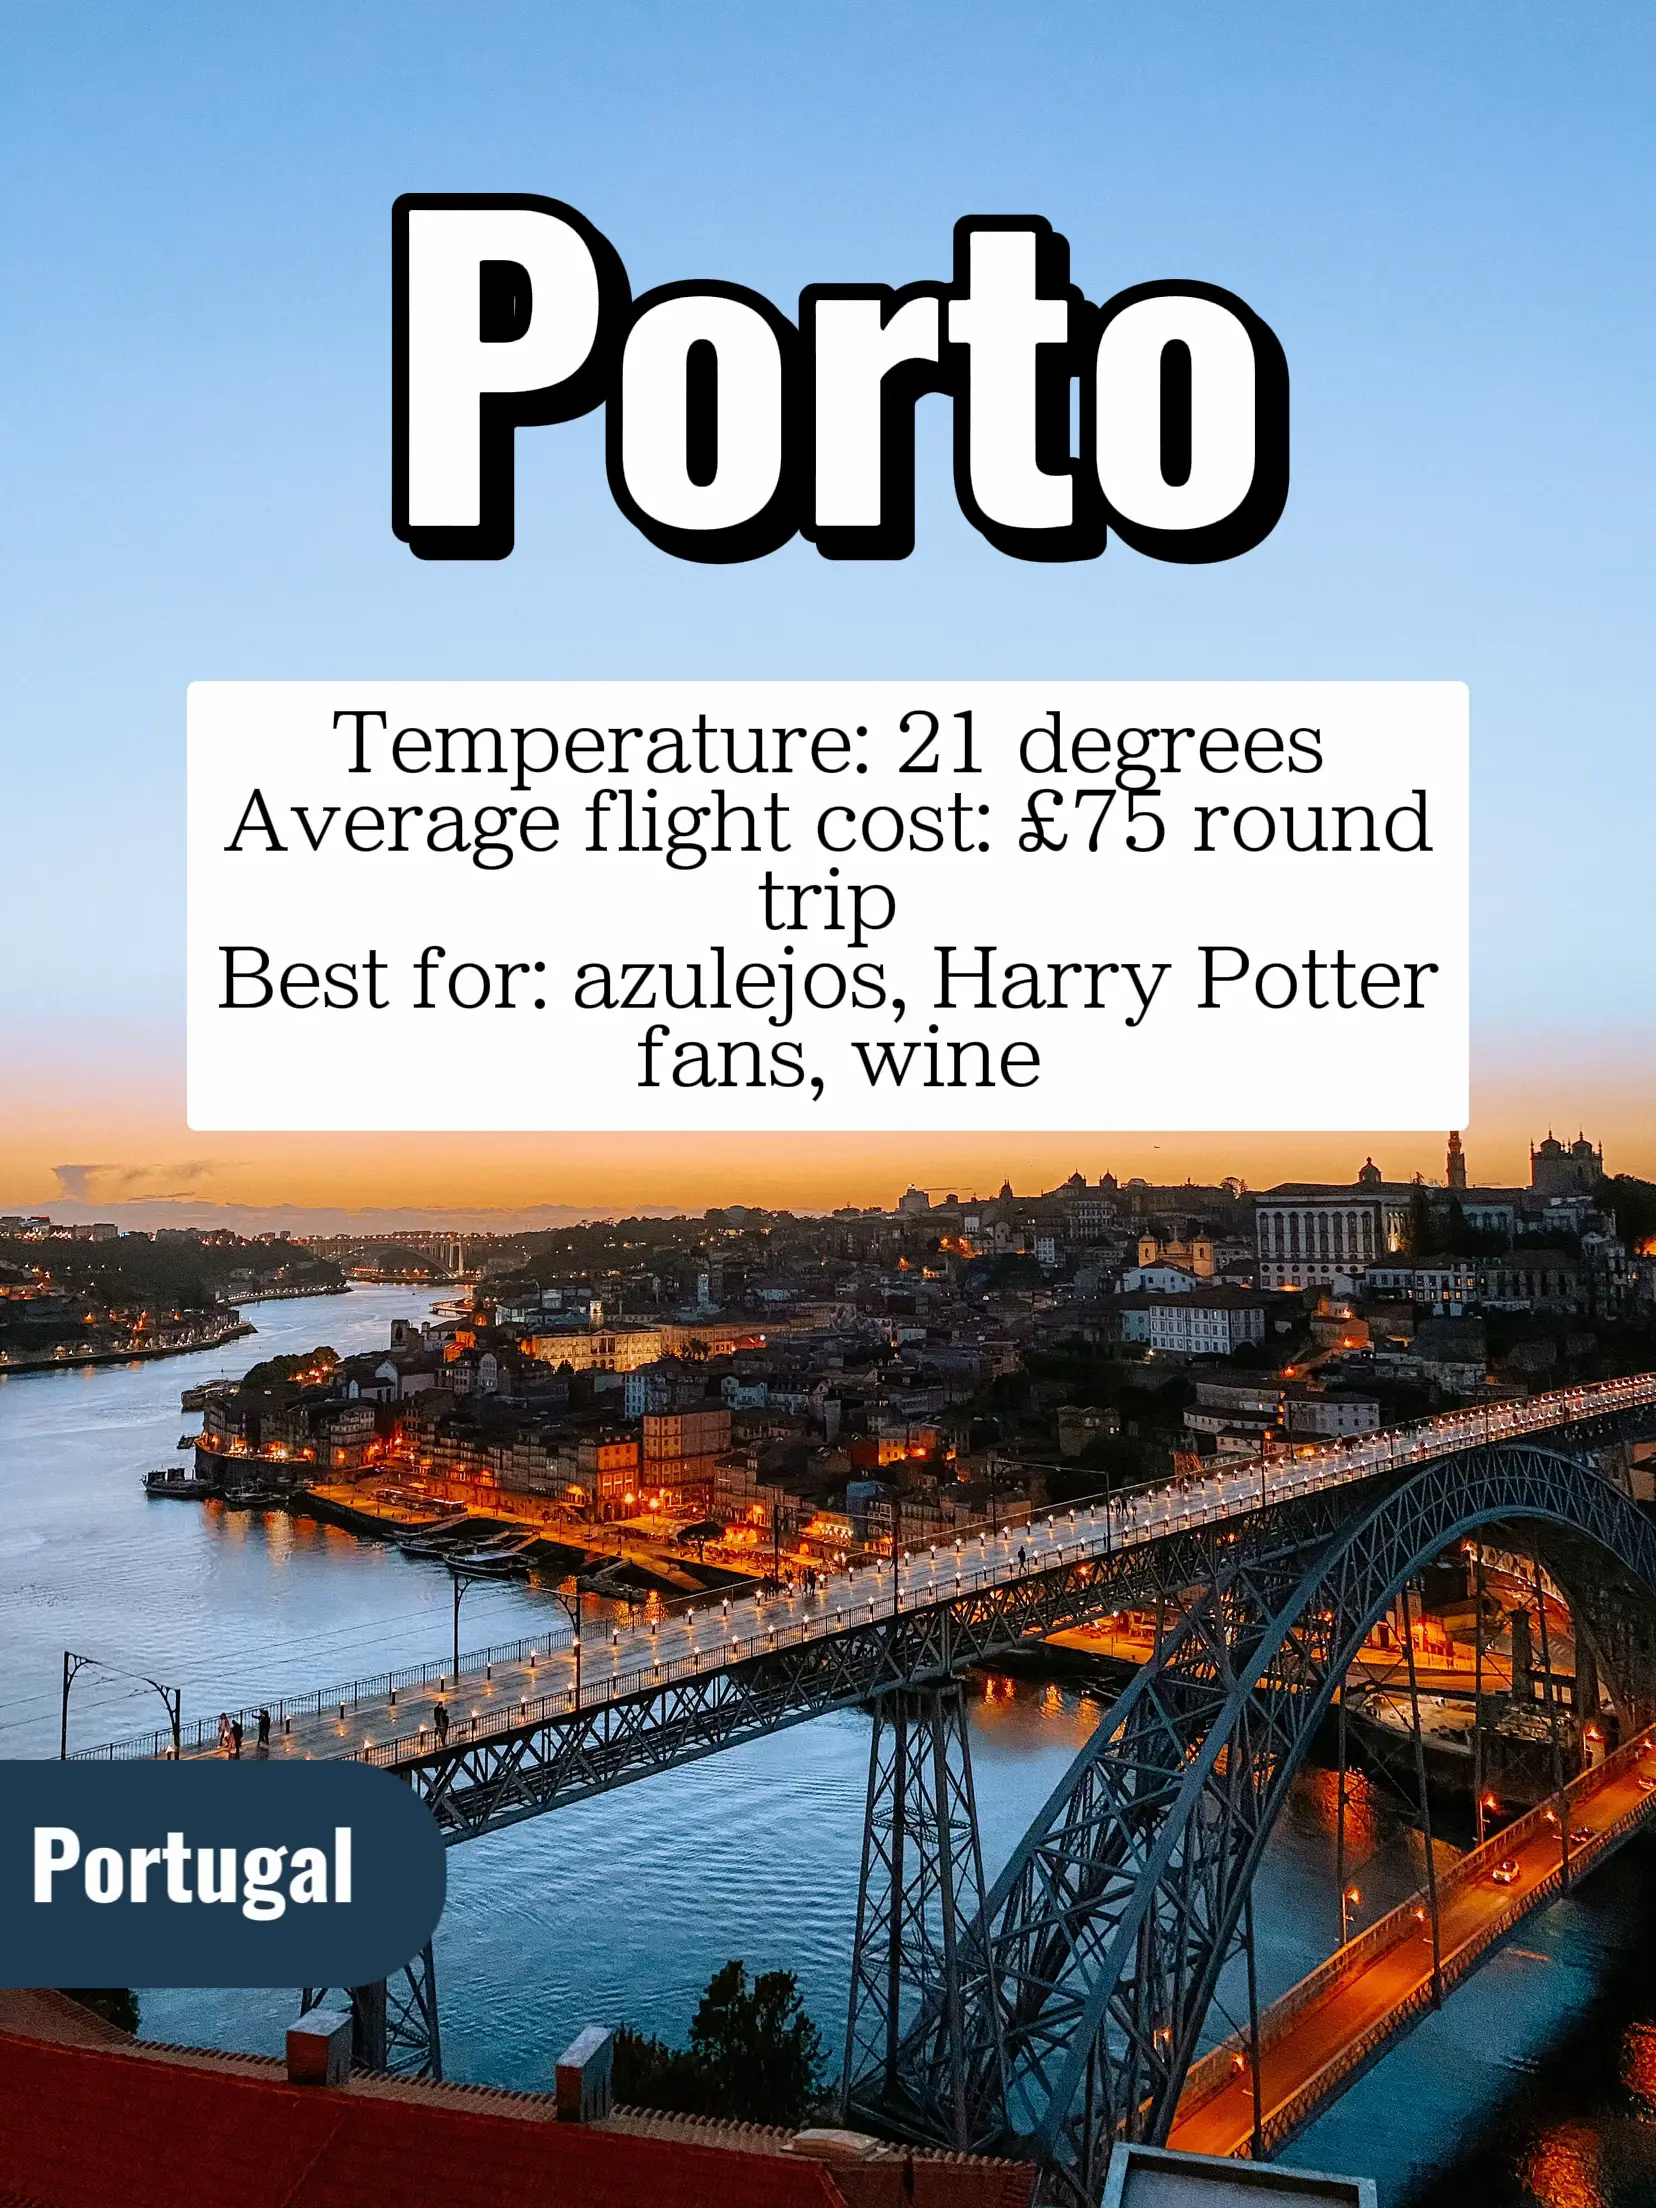 Porto - Portugal, Destinations